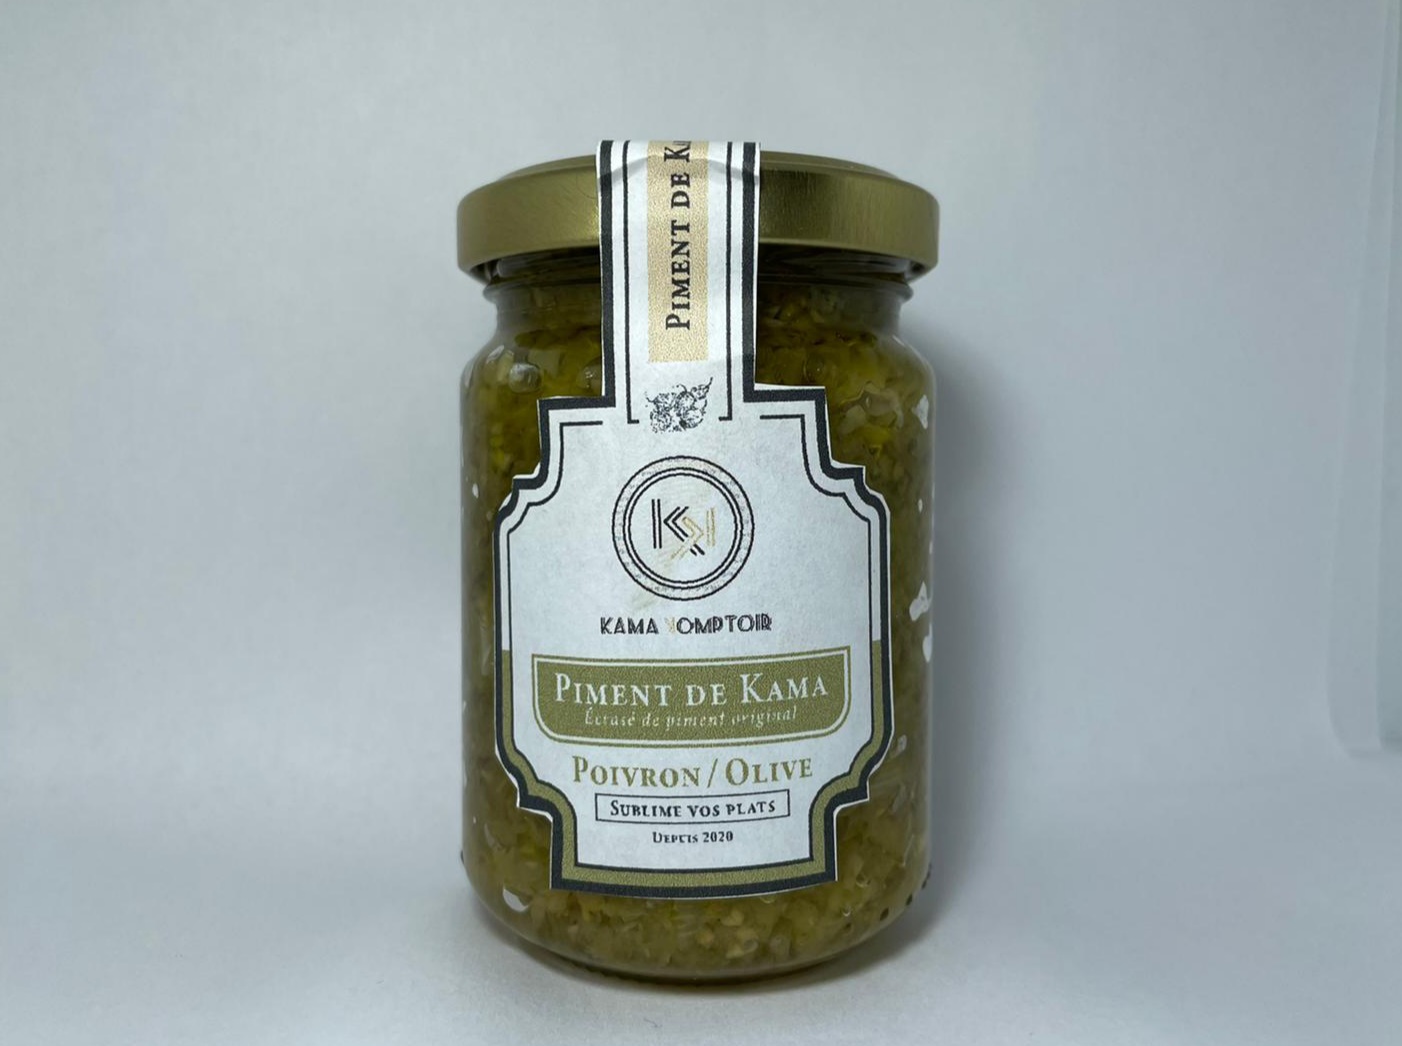 Piment de Kama – Poivron / Olive